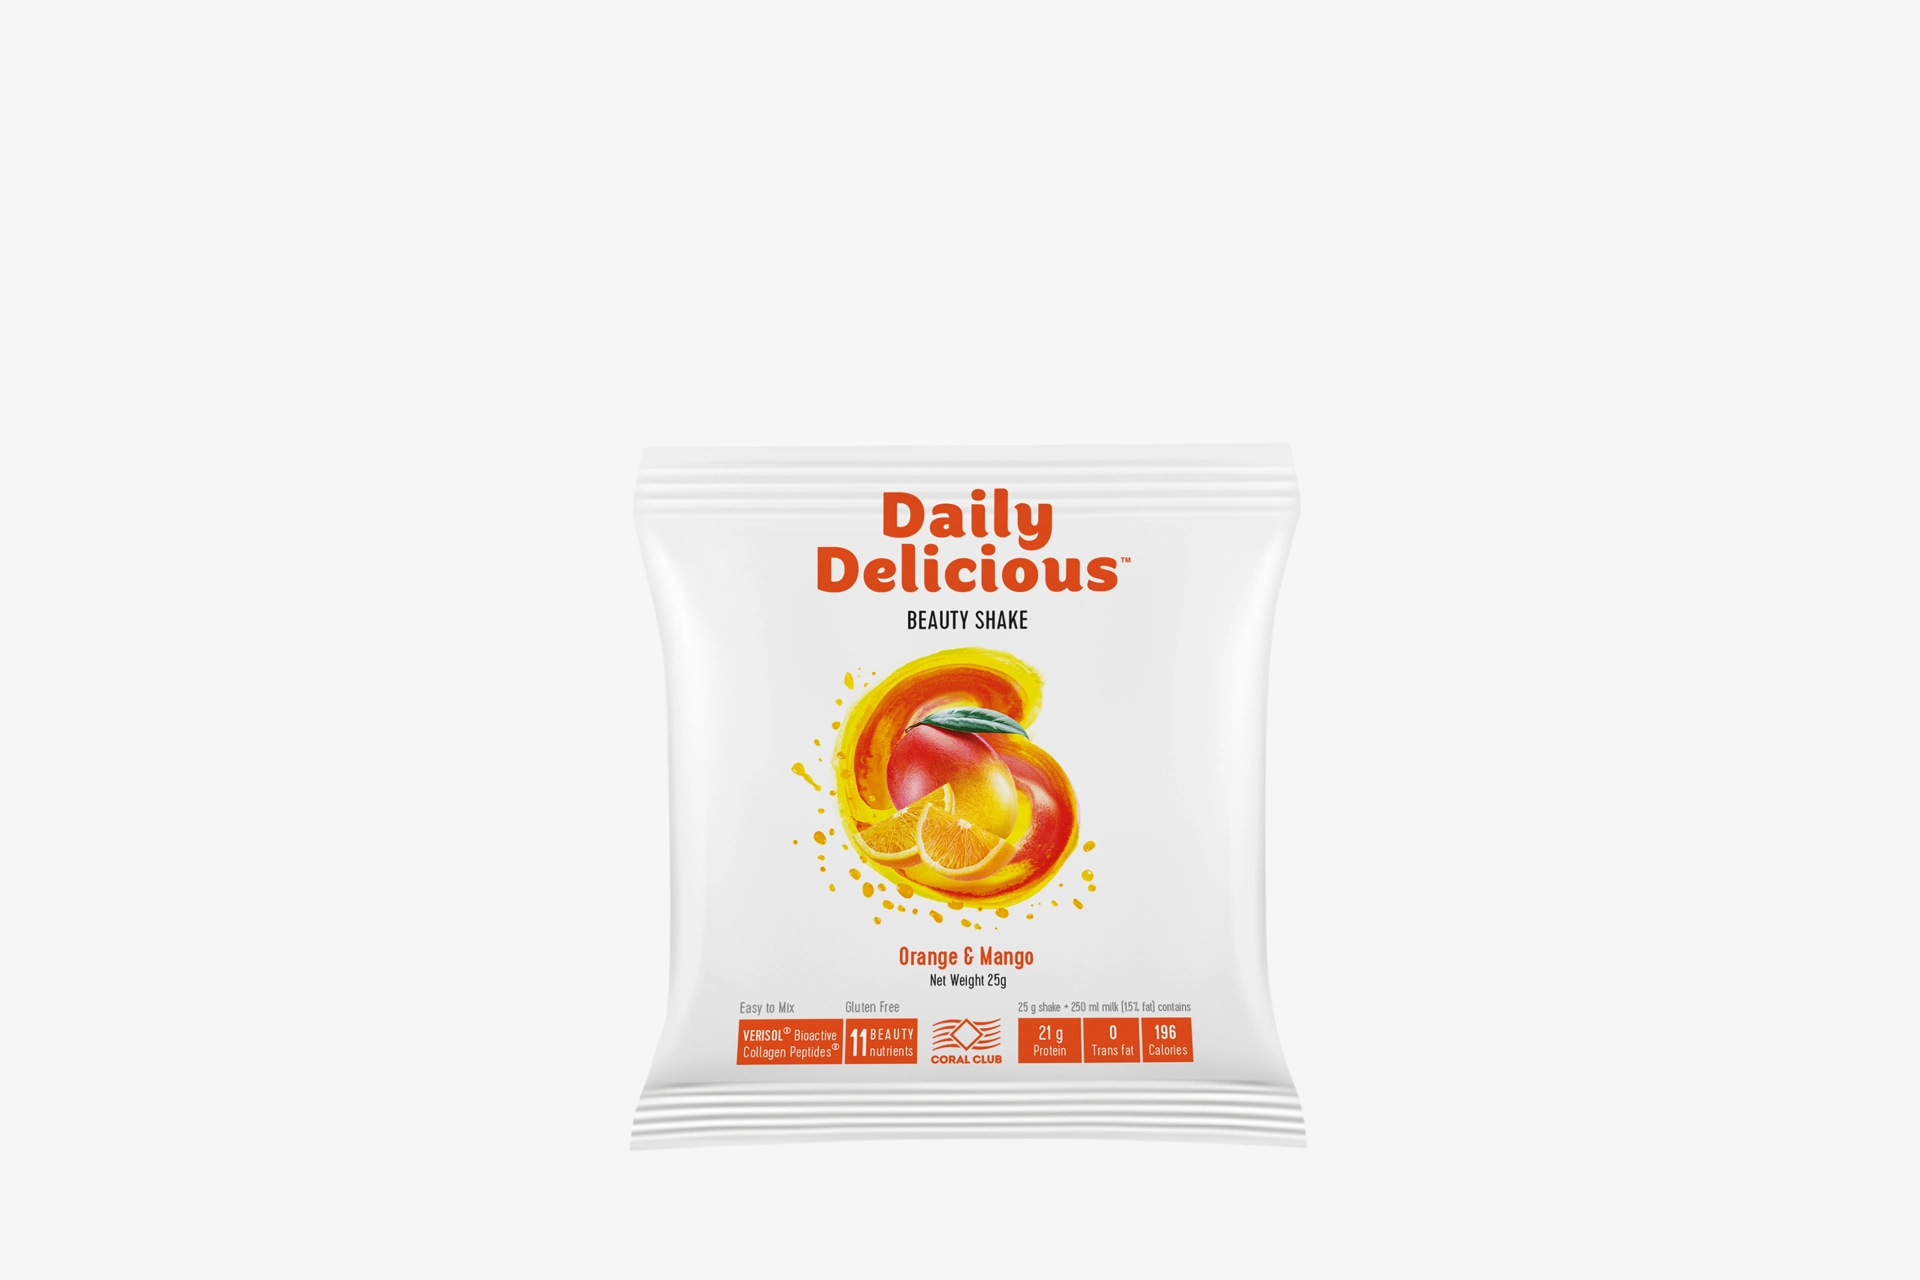 Daily Delicious Beauty Shake Orange & Mango (213800)